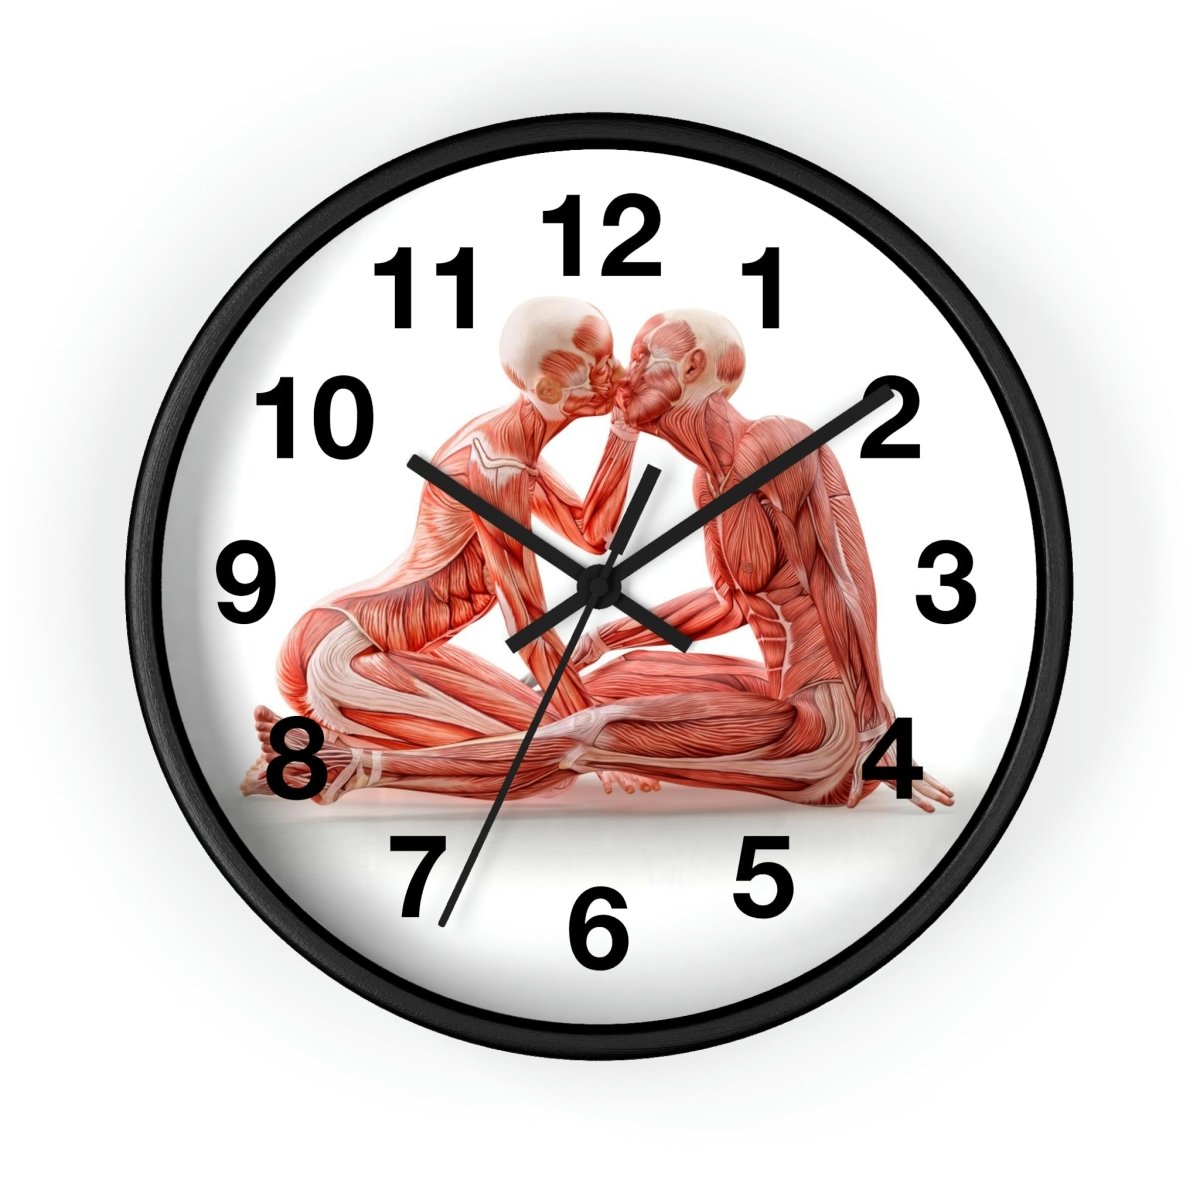 Anatomical Romance Wall Clock - Medical Clock Design